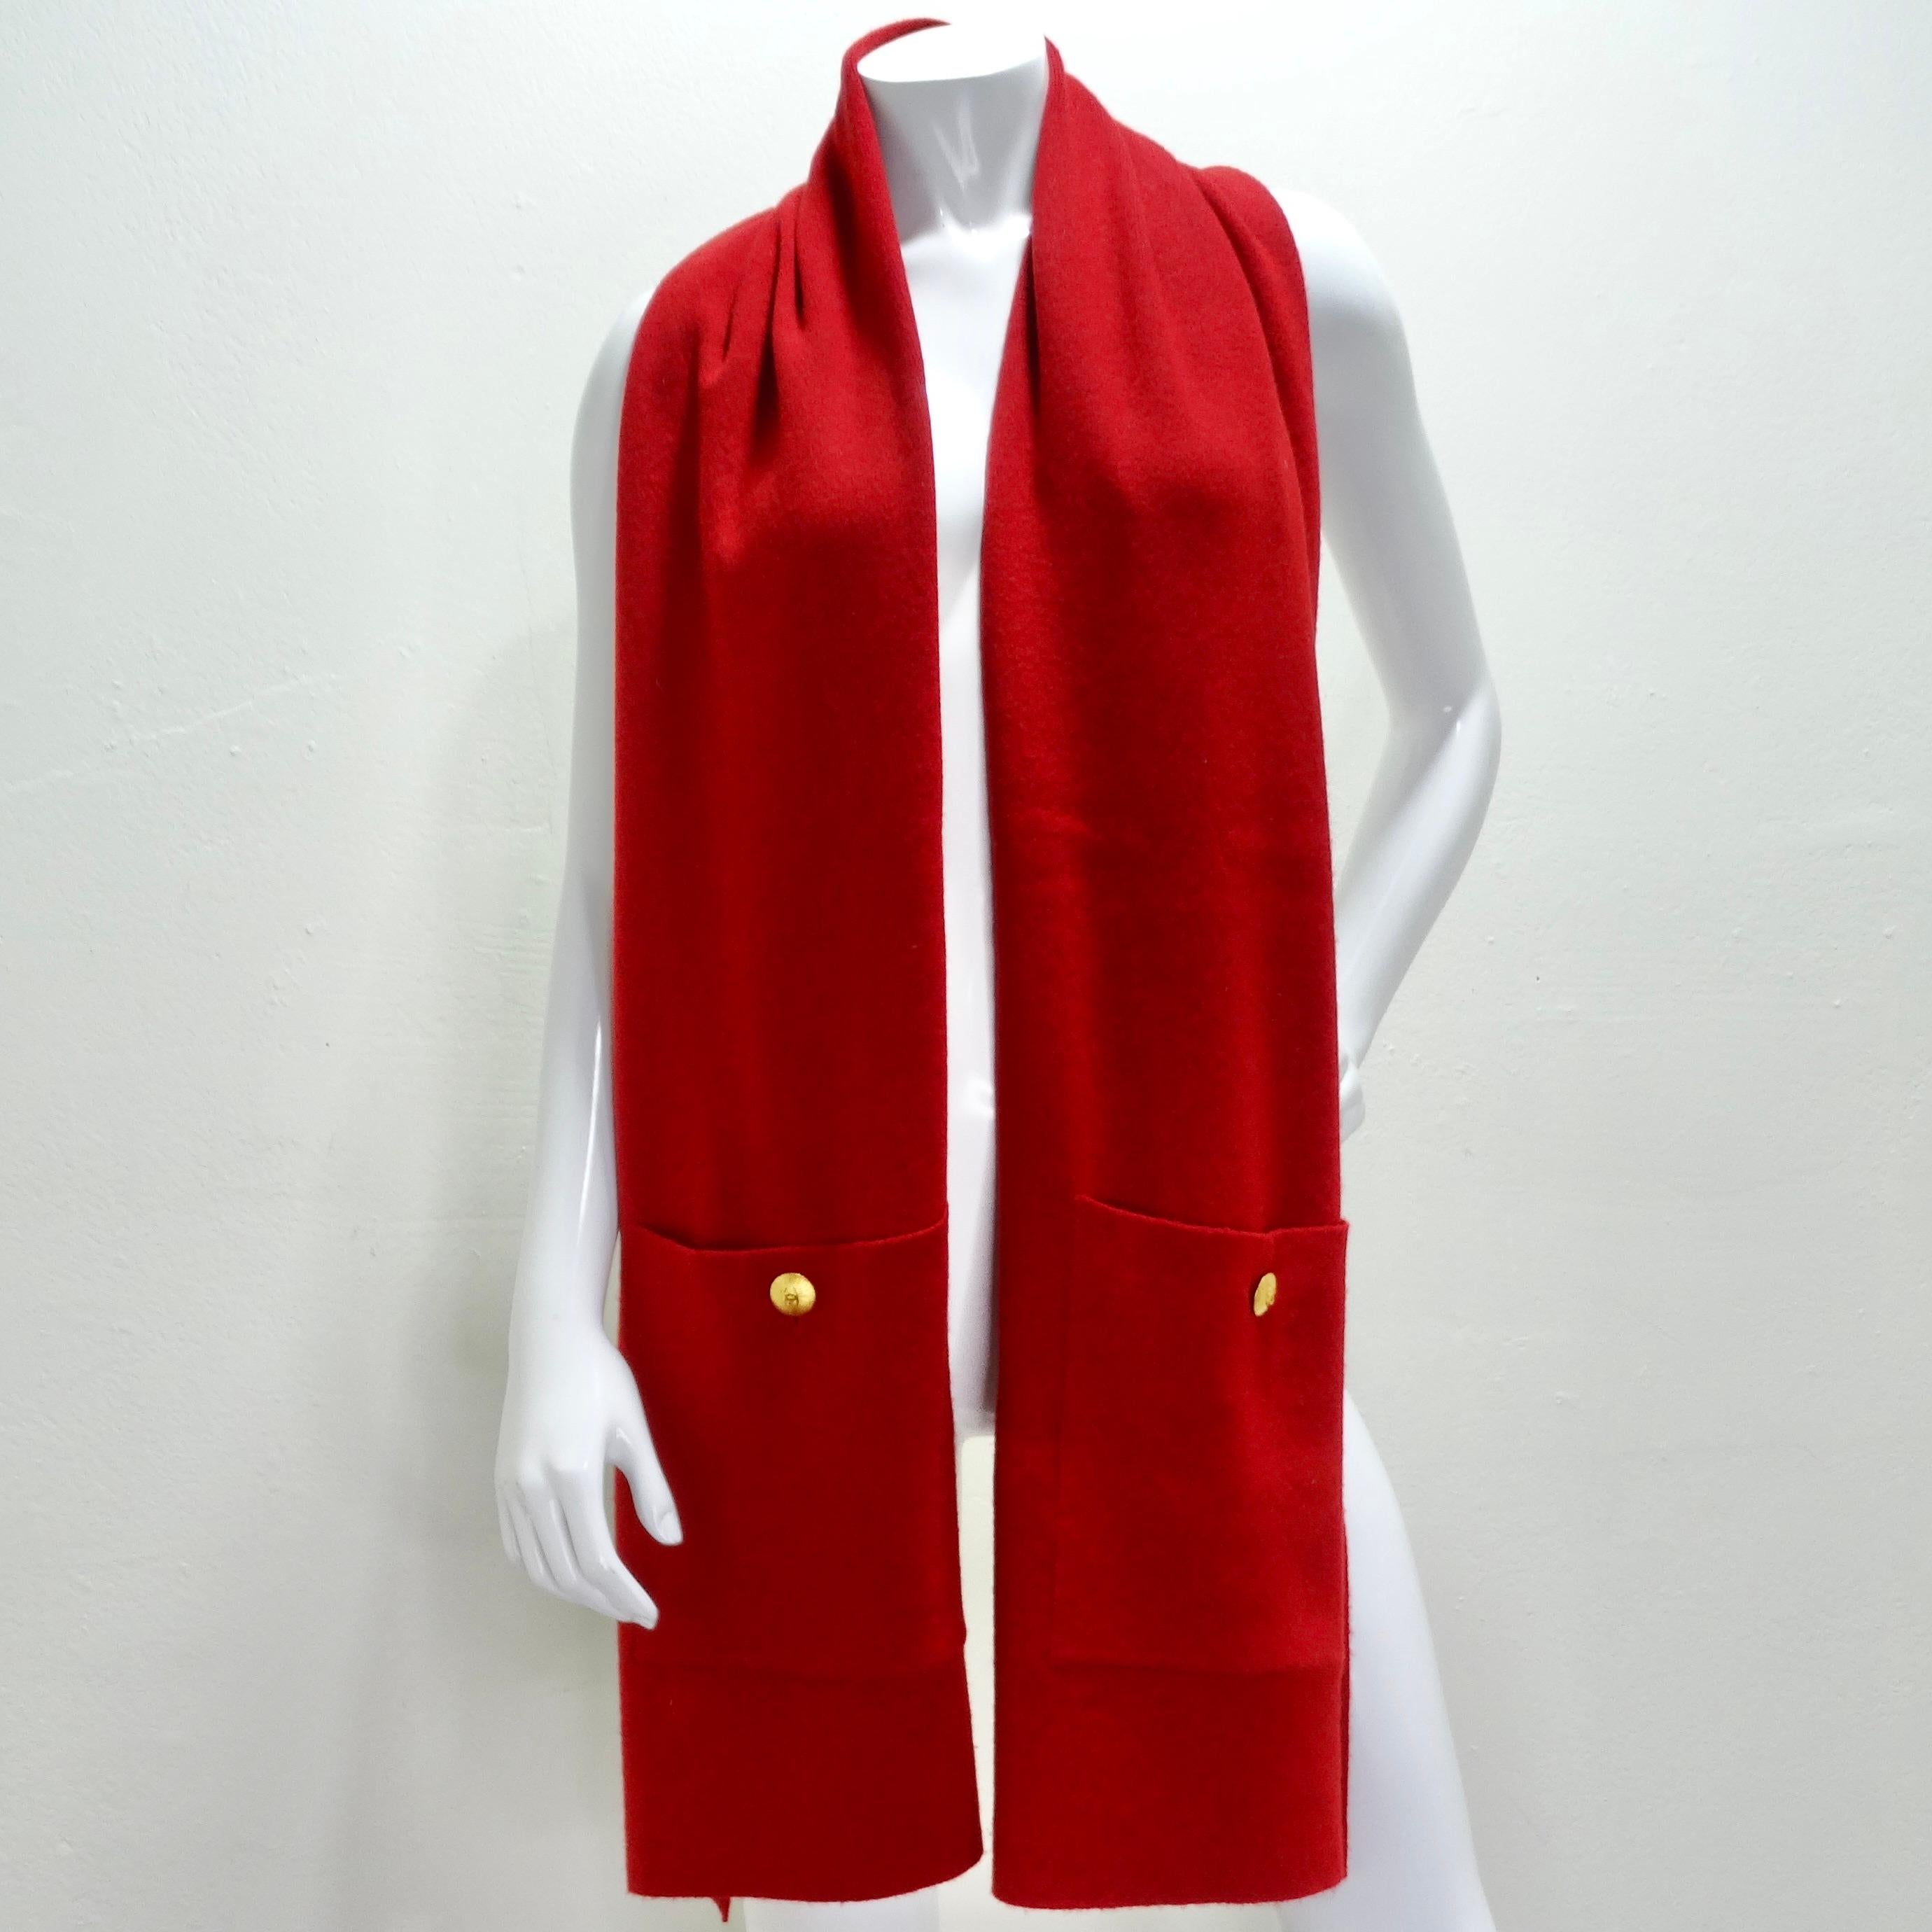 Enveloppez-vous de luxe avec l'écharpe de poche en cachemire rouge des années 90 de Chanel. Confectionnée en cachemire incroyablement doux, cette épaisse écharpe est non seulement un accessoire élégant, mais aussi un indispensable fonctionnel pour